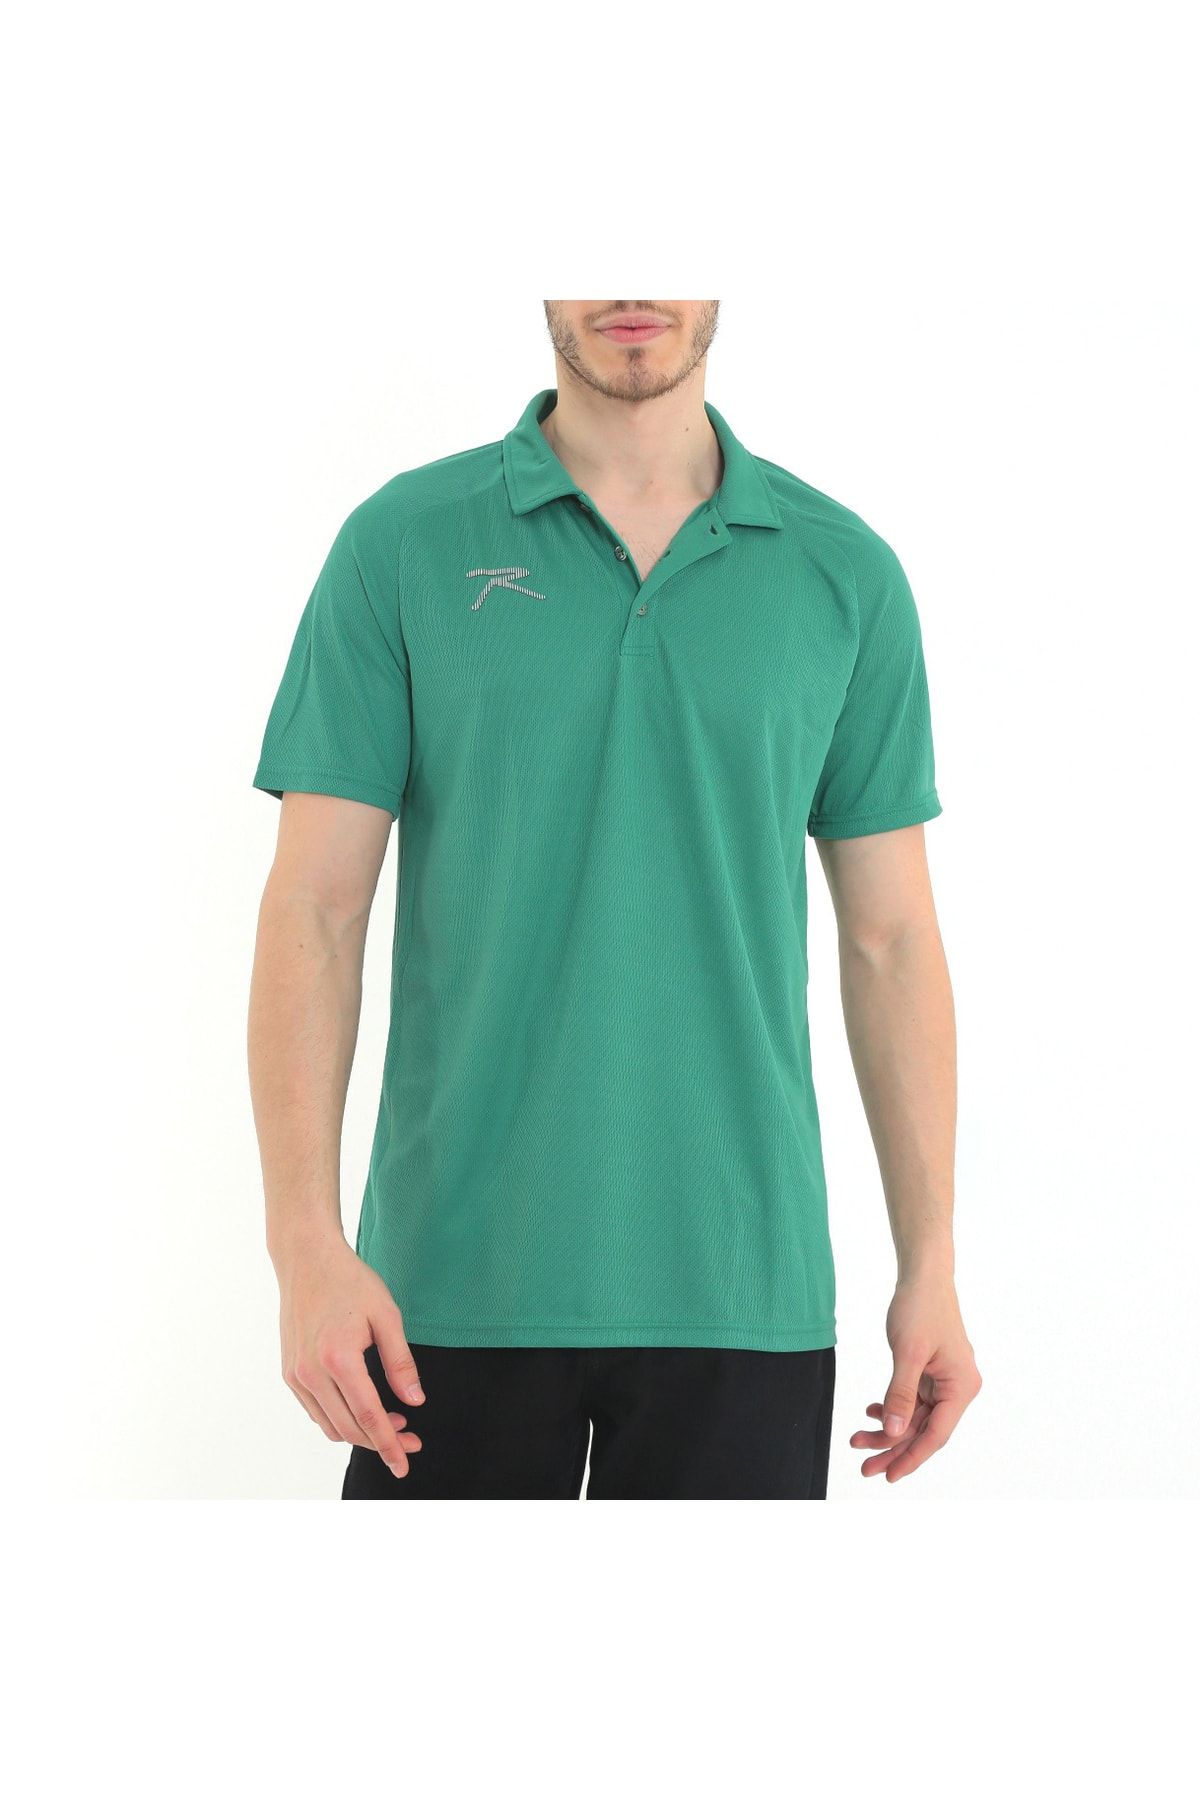 raru Erkek Kısa Kollu Polo T-shirt Nox Yeşil